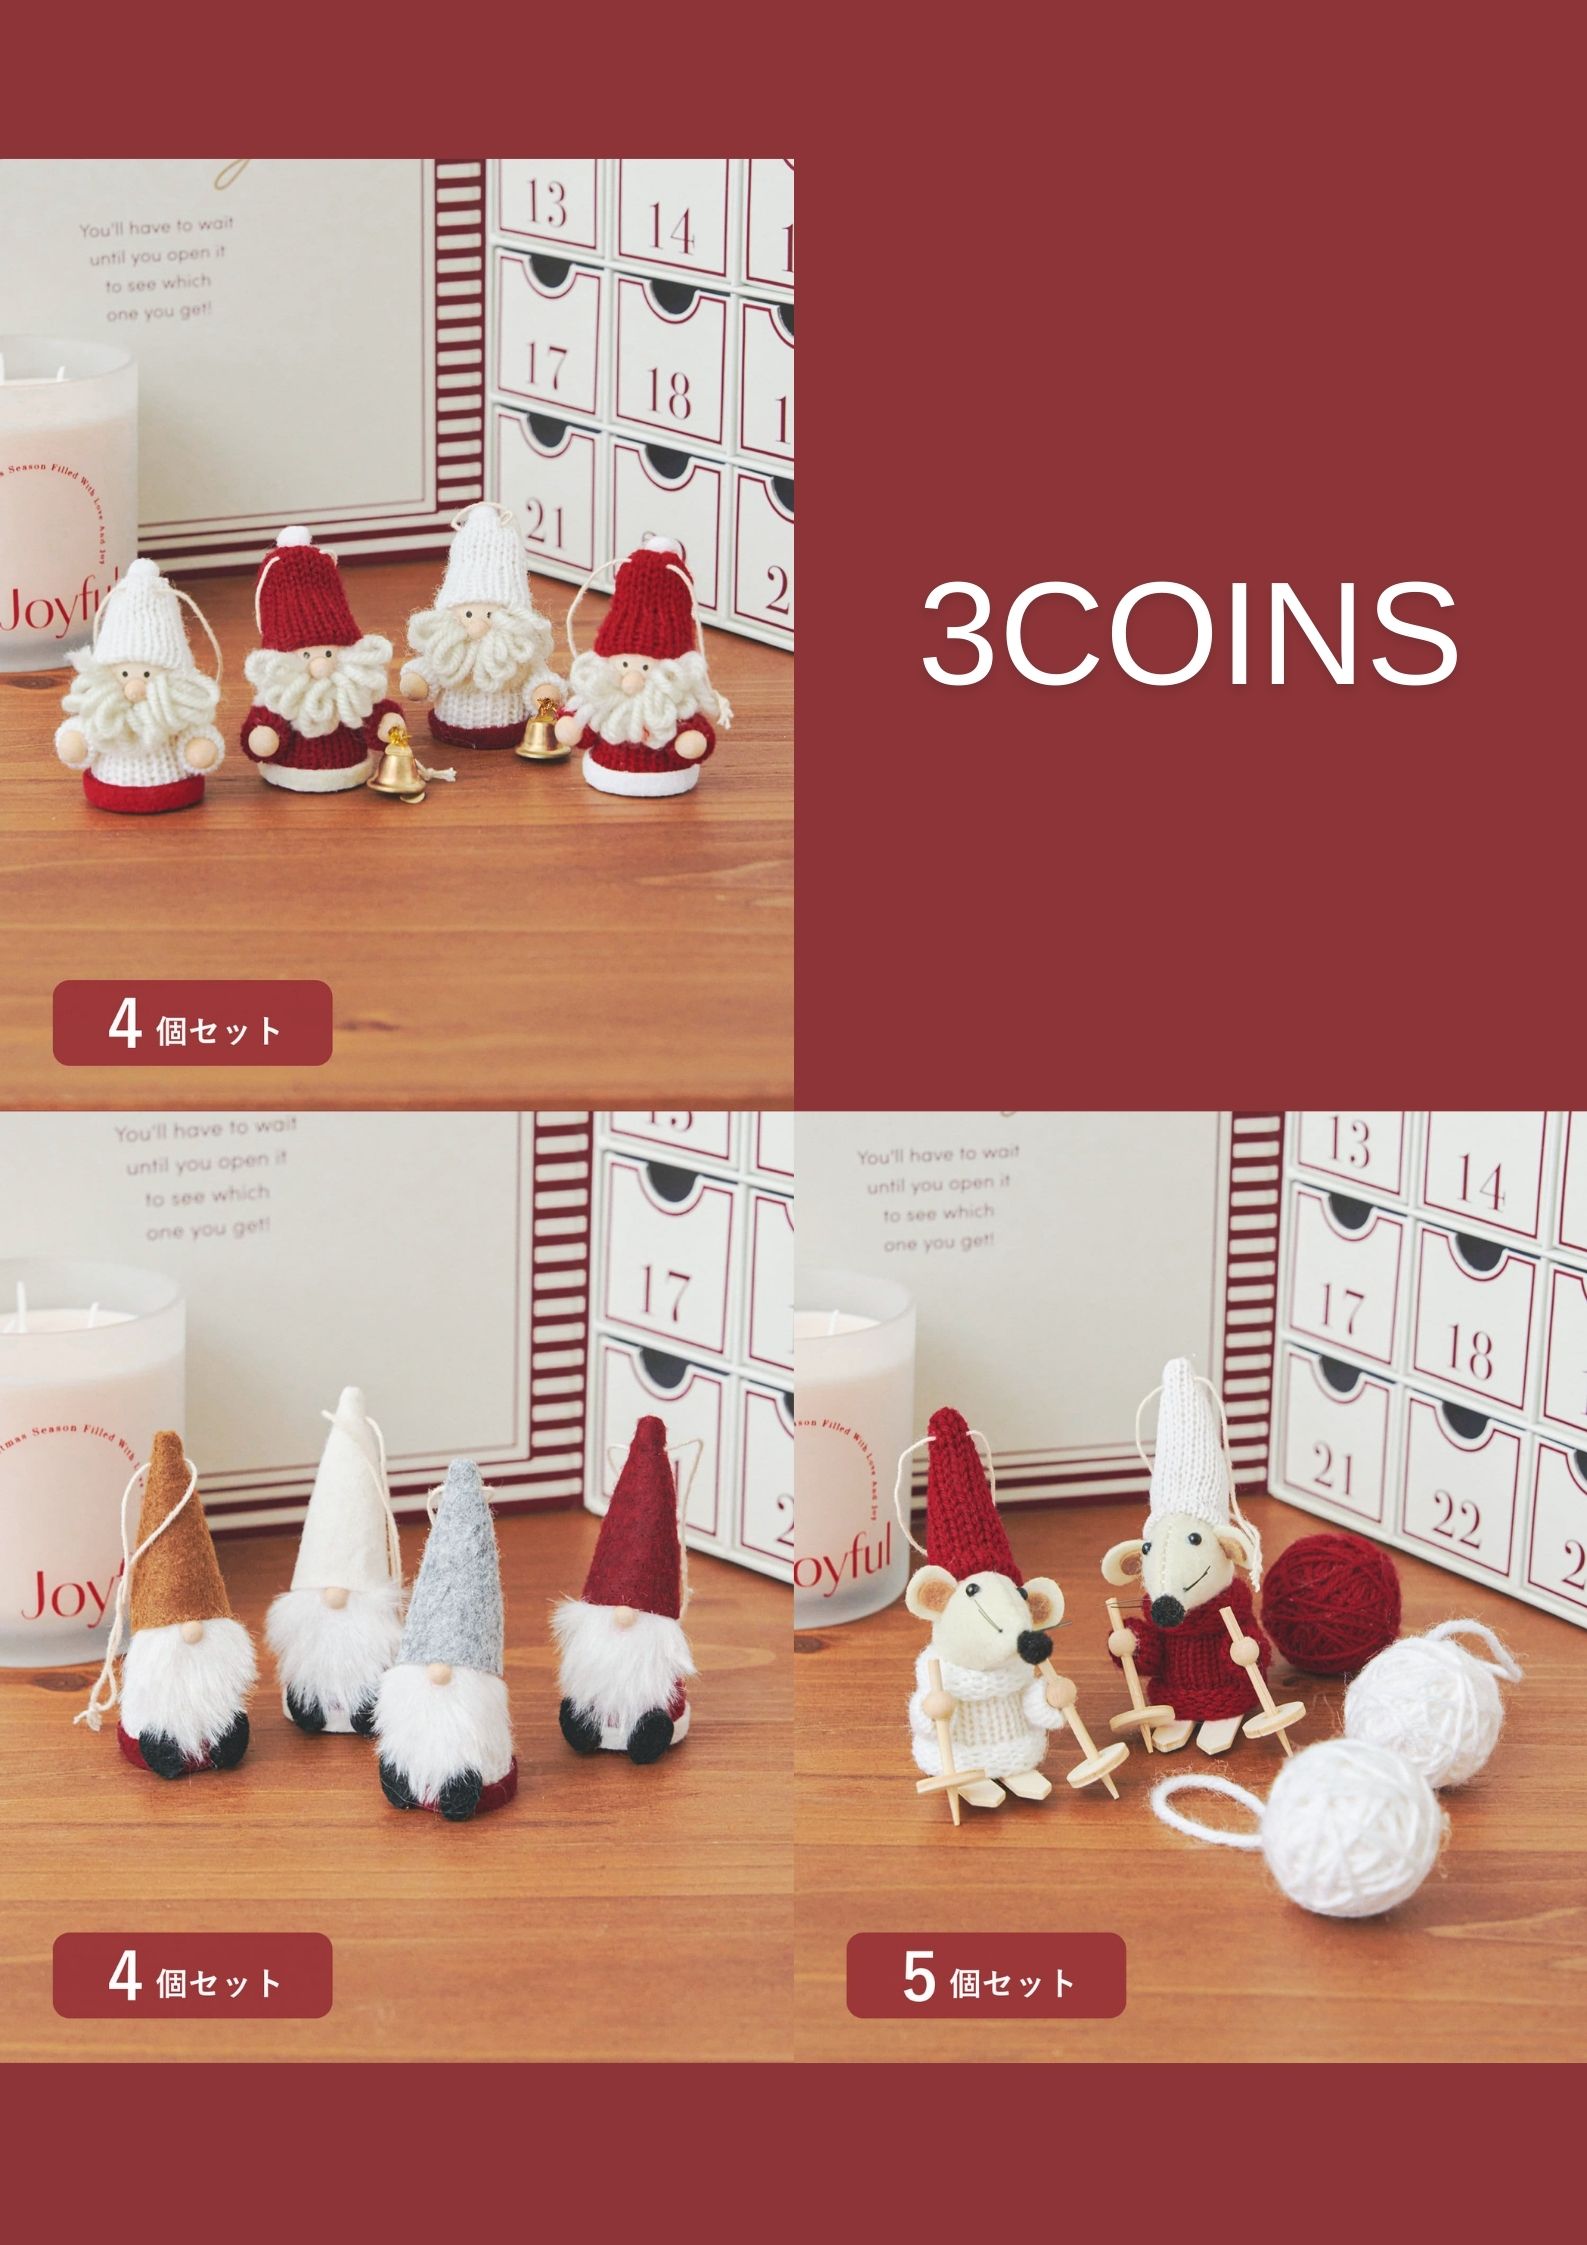 【預購】3coins 聖誕樹裝飾品 小老鼠 小矮人 聖誕老人 木頭裝飾品